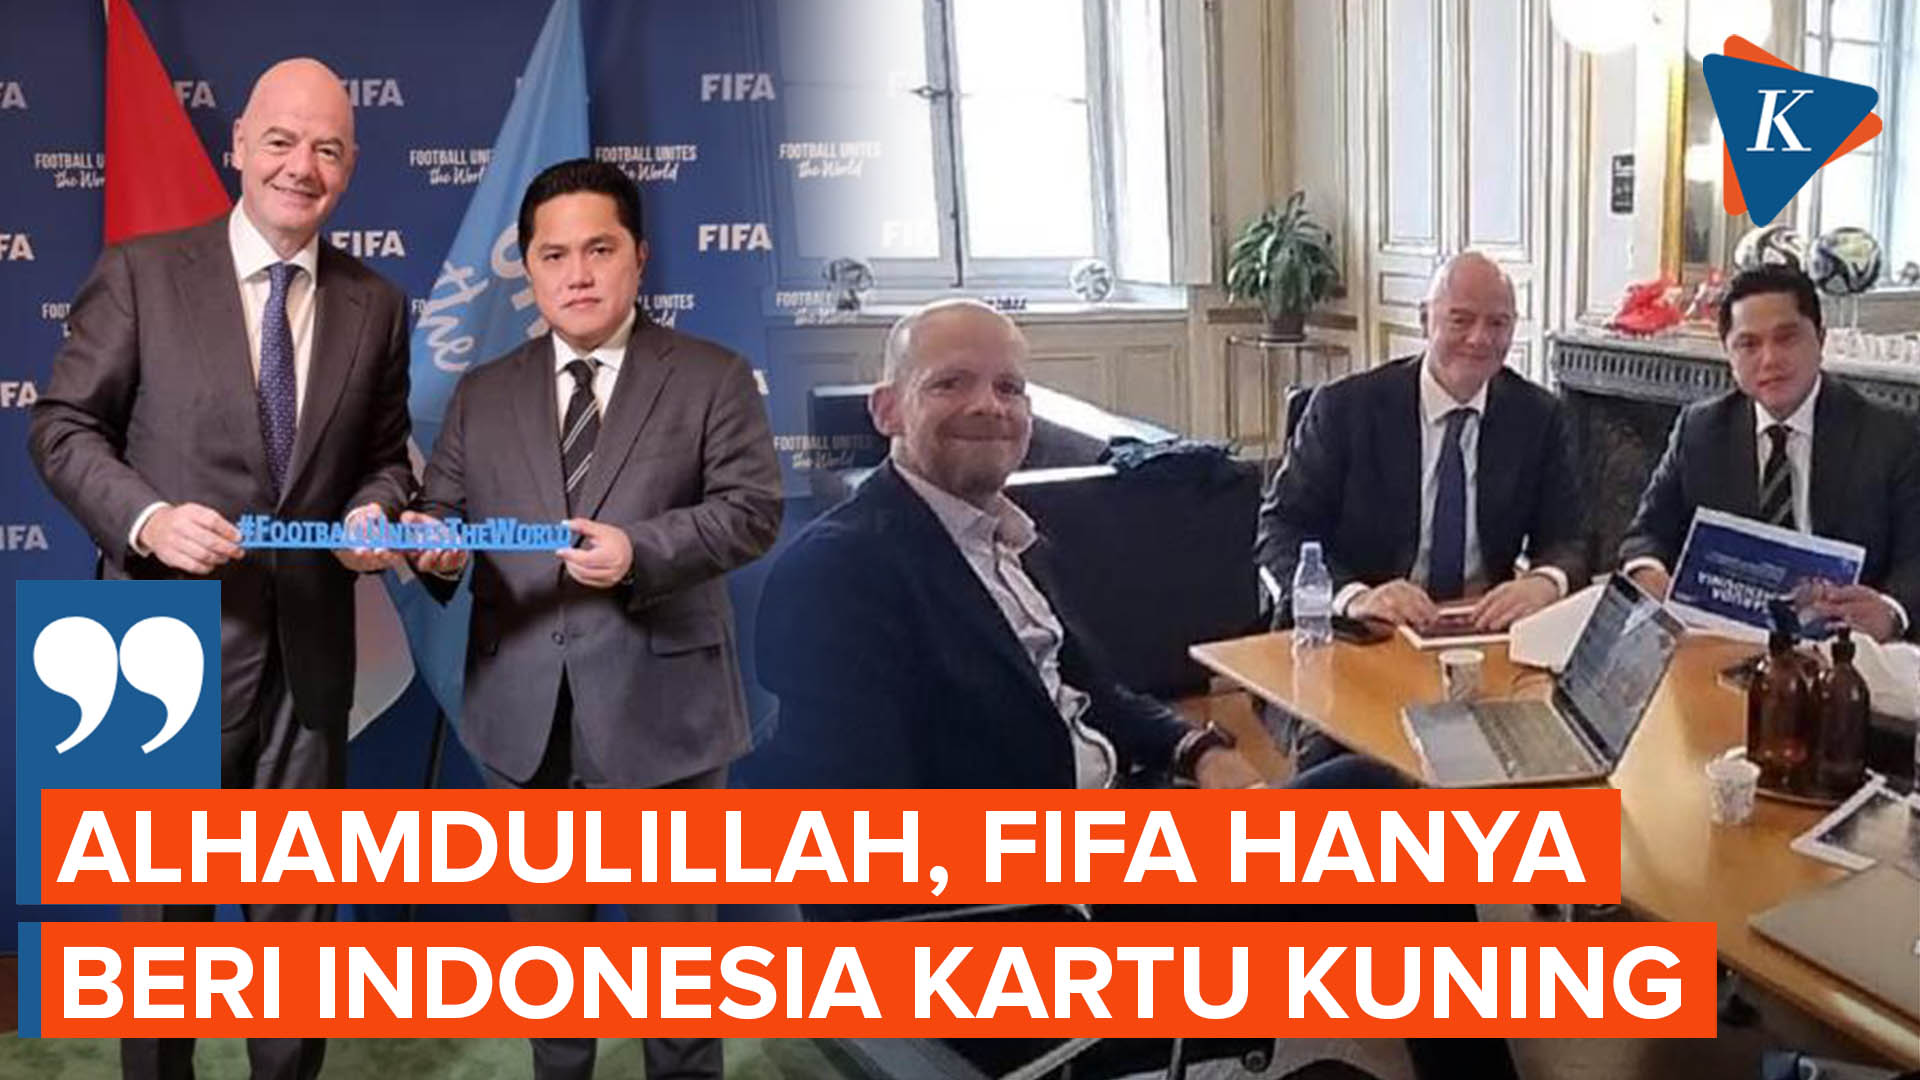 Terhindar dari Sanksi Berat, Indonesia Hanya Dapat Kartu Kuning dari FIFA